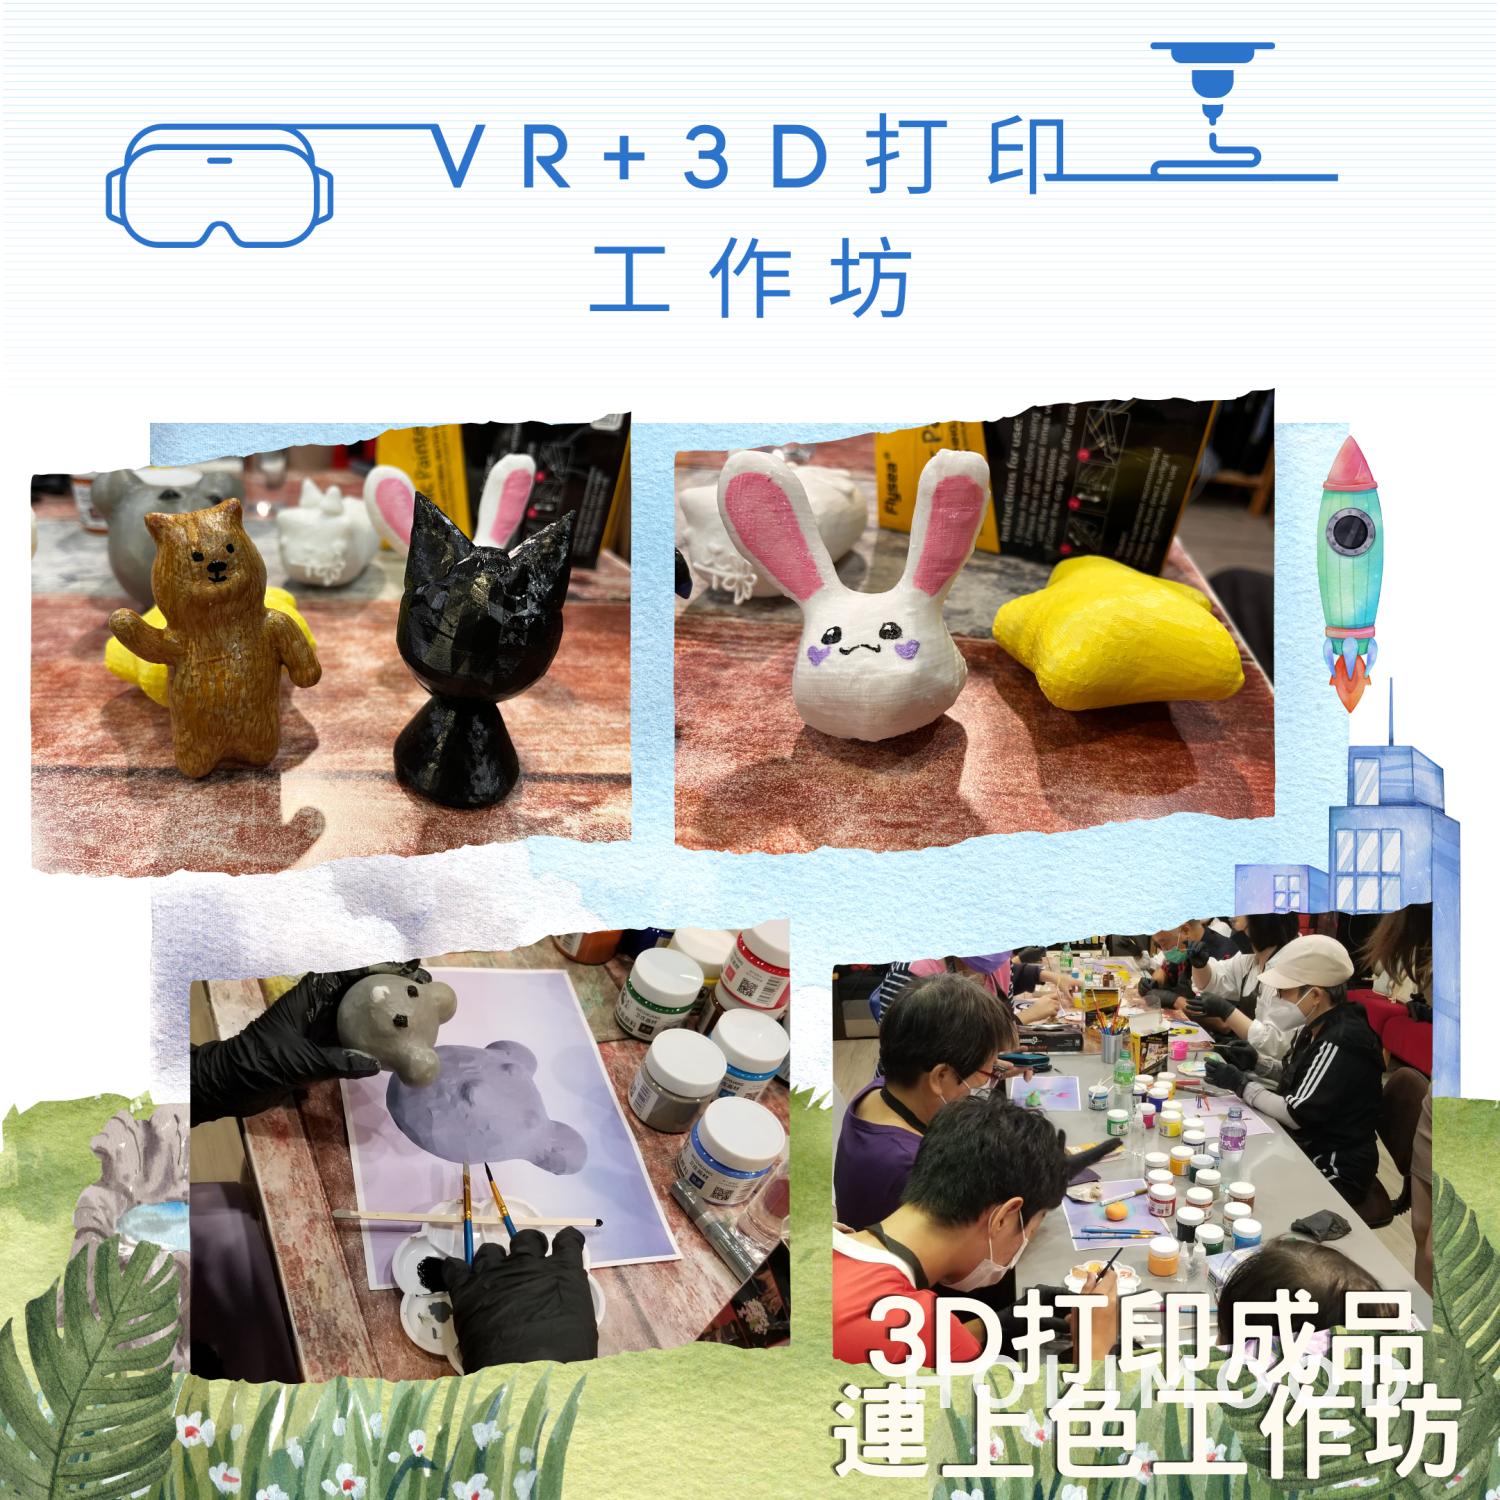 V-Owl Station VR Party VR+3D打印工作坊 1